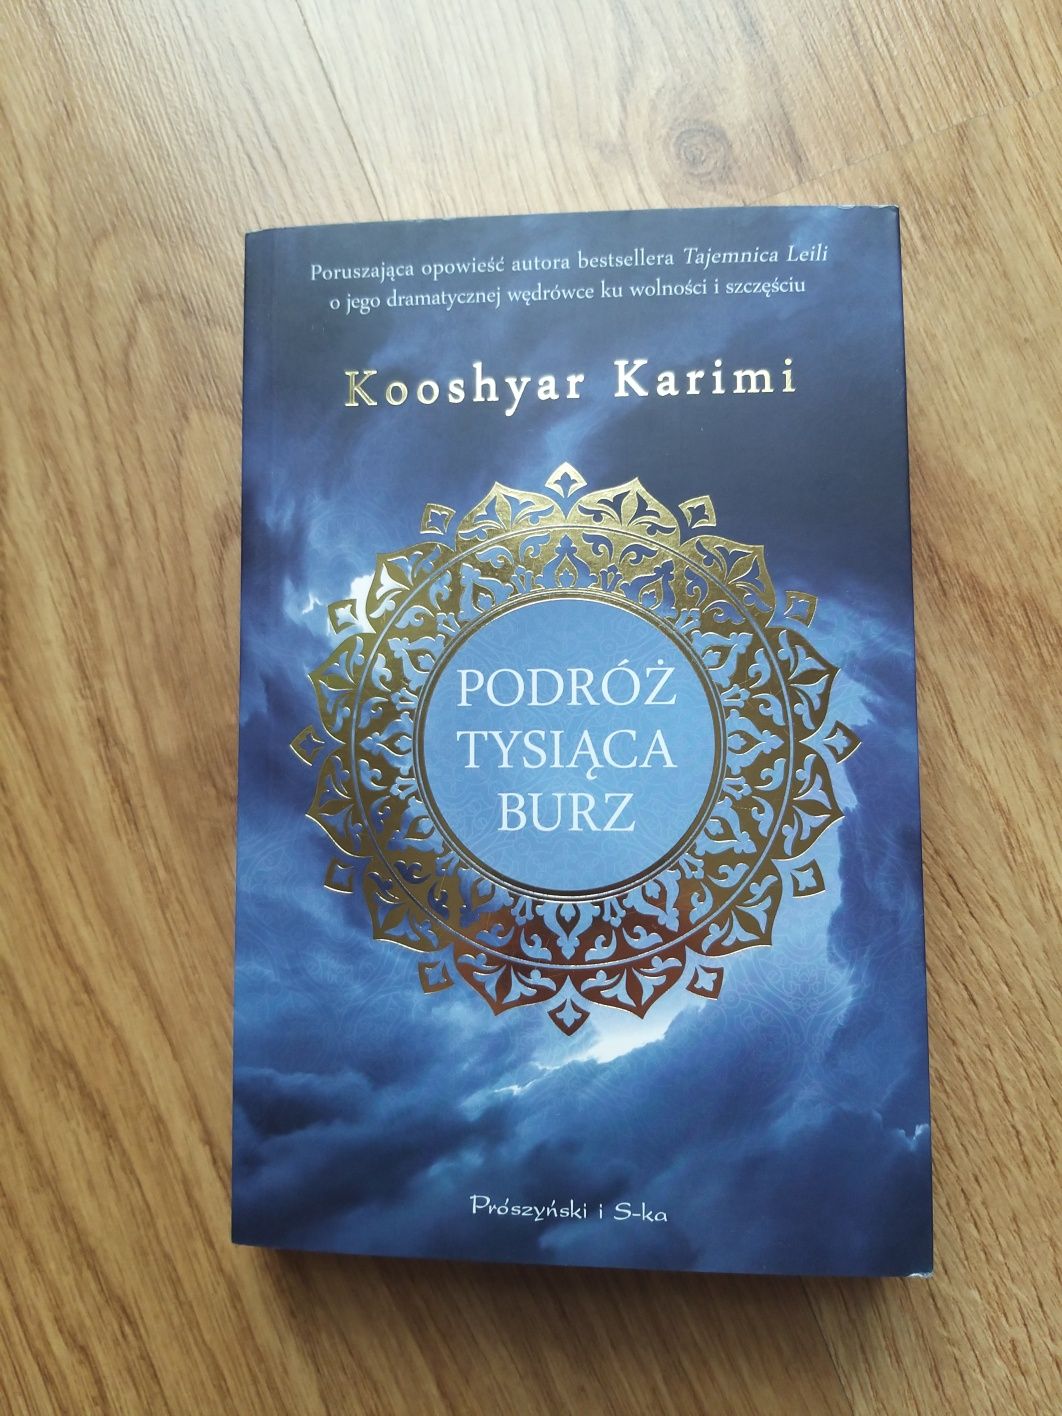 Podróż tysiąca burz
Bestseller książka Karimi Kooshyar